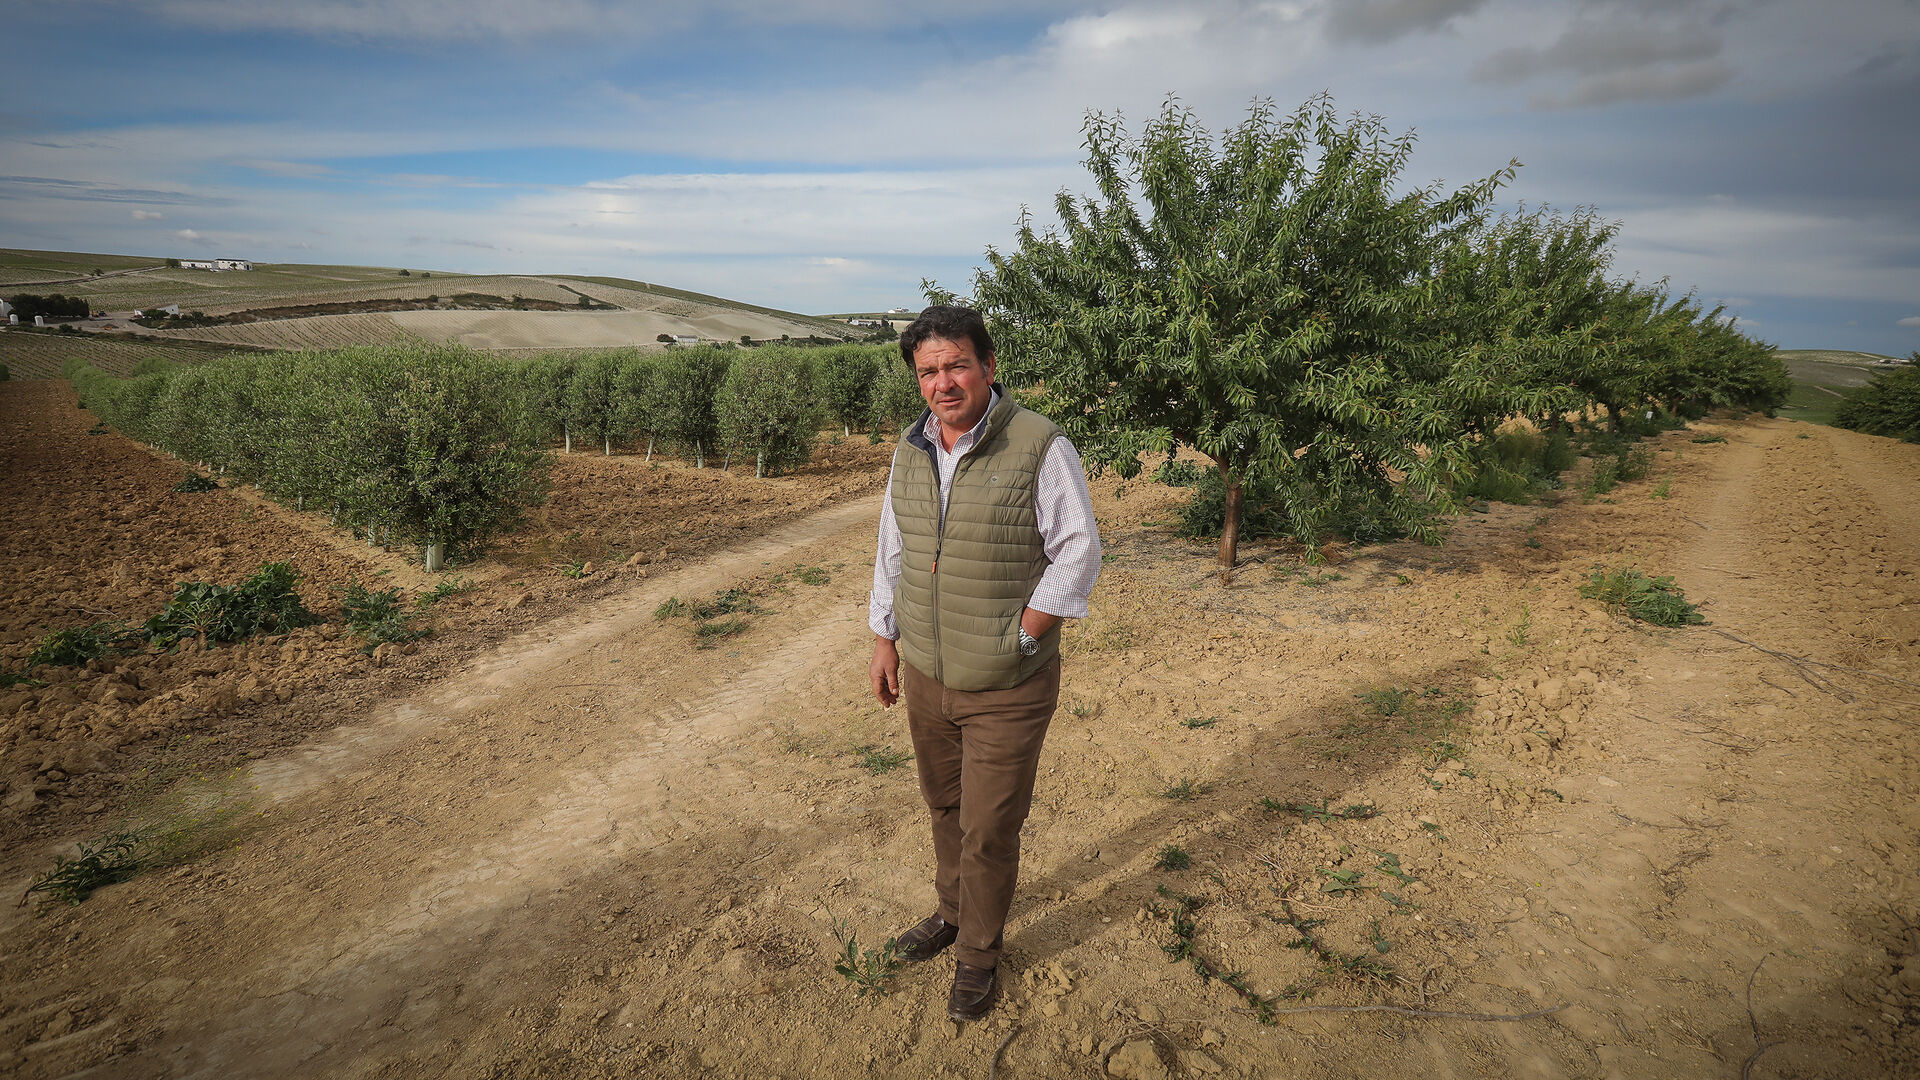 Alexis Ferral fotografiado entre olivos y almendros de su propiedad.